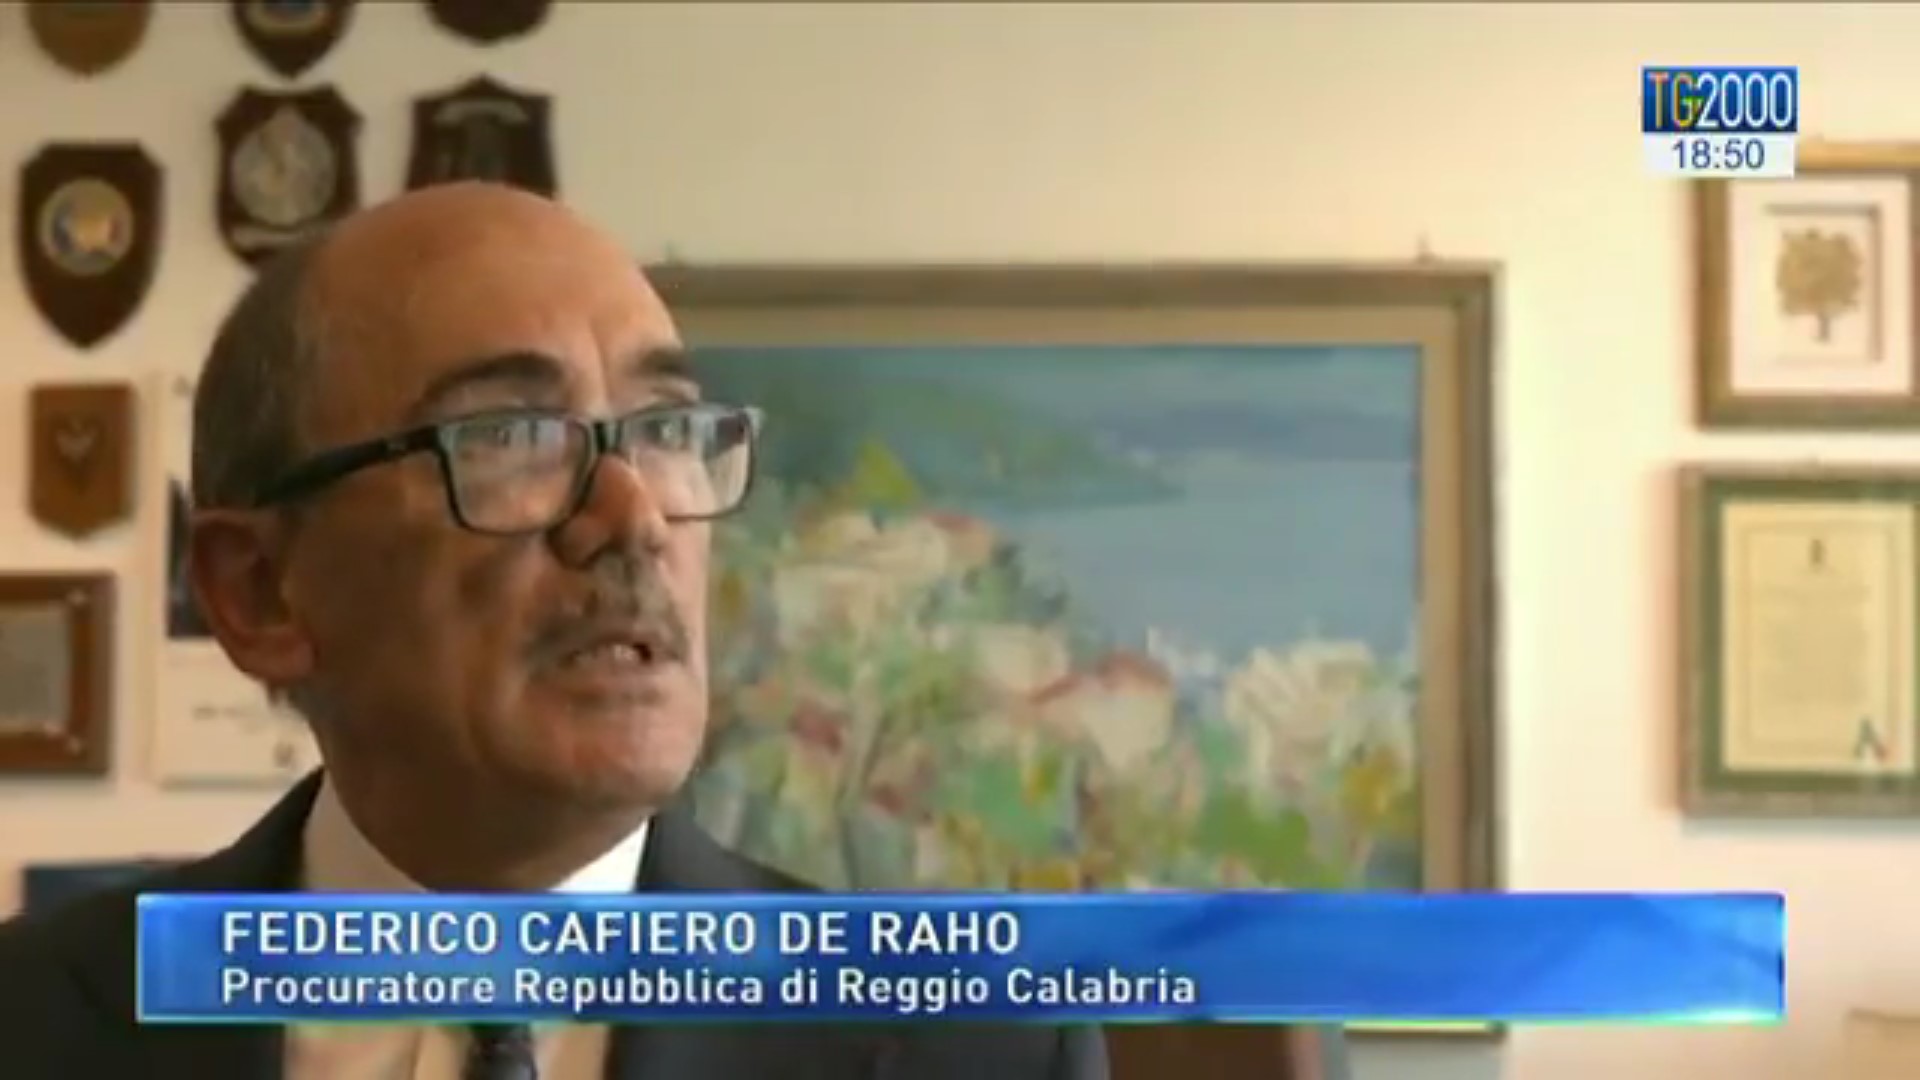 Federico Cafiero de Raho